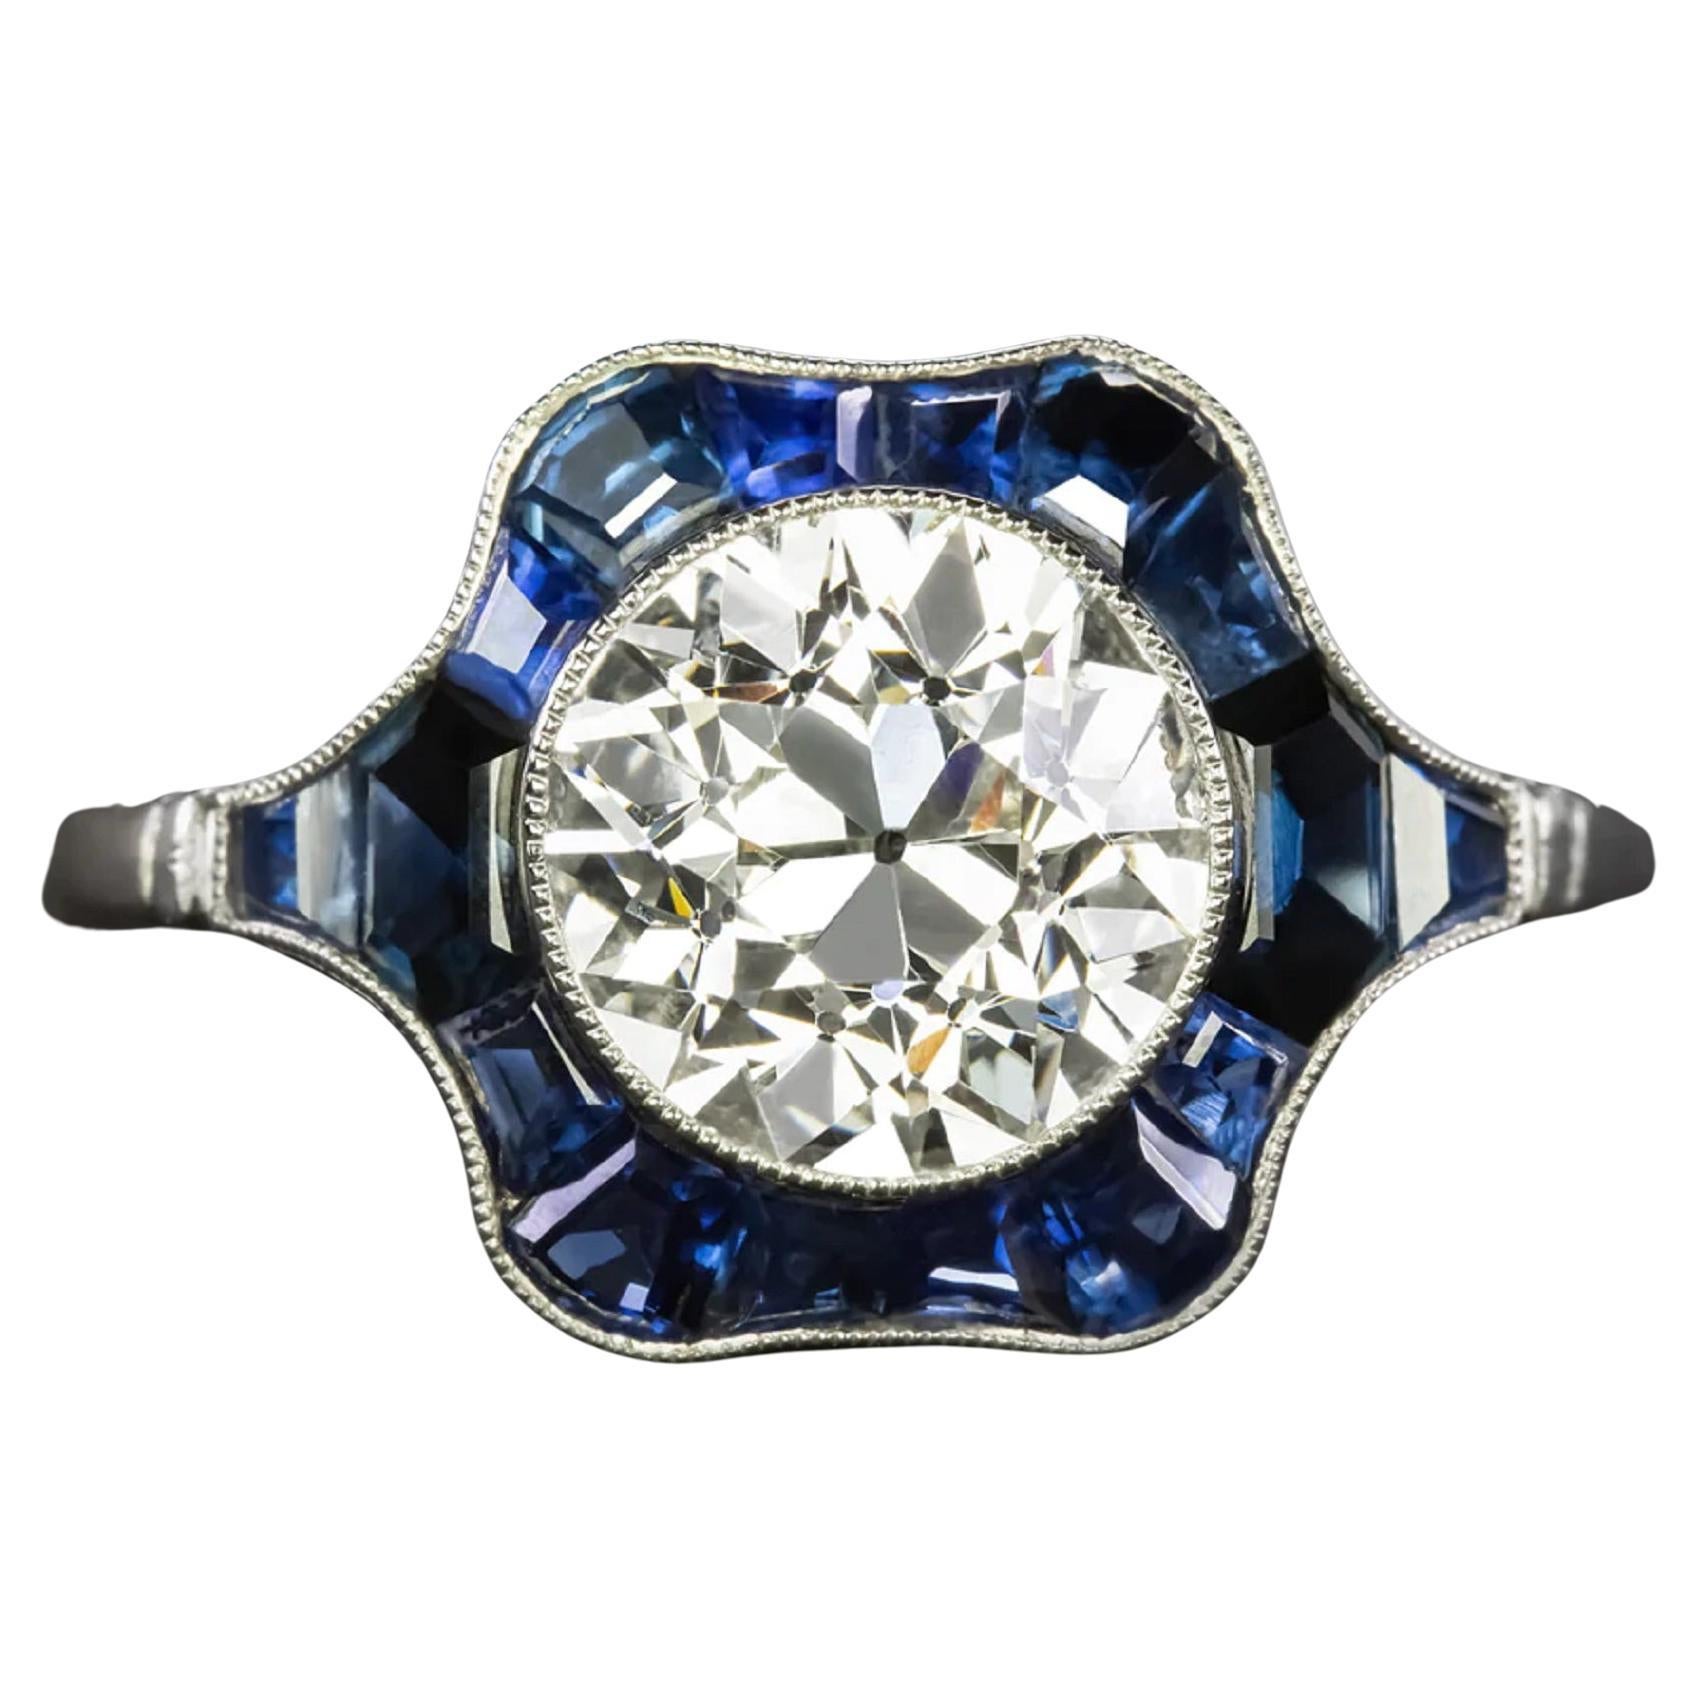 Authentischer Platinring mit 2,27 Karat alteuropäischem Diamanten und blauem Saphir im Vintage-Stil